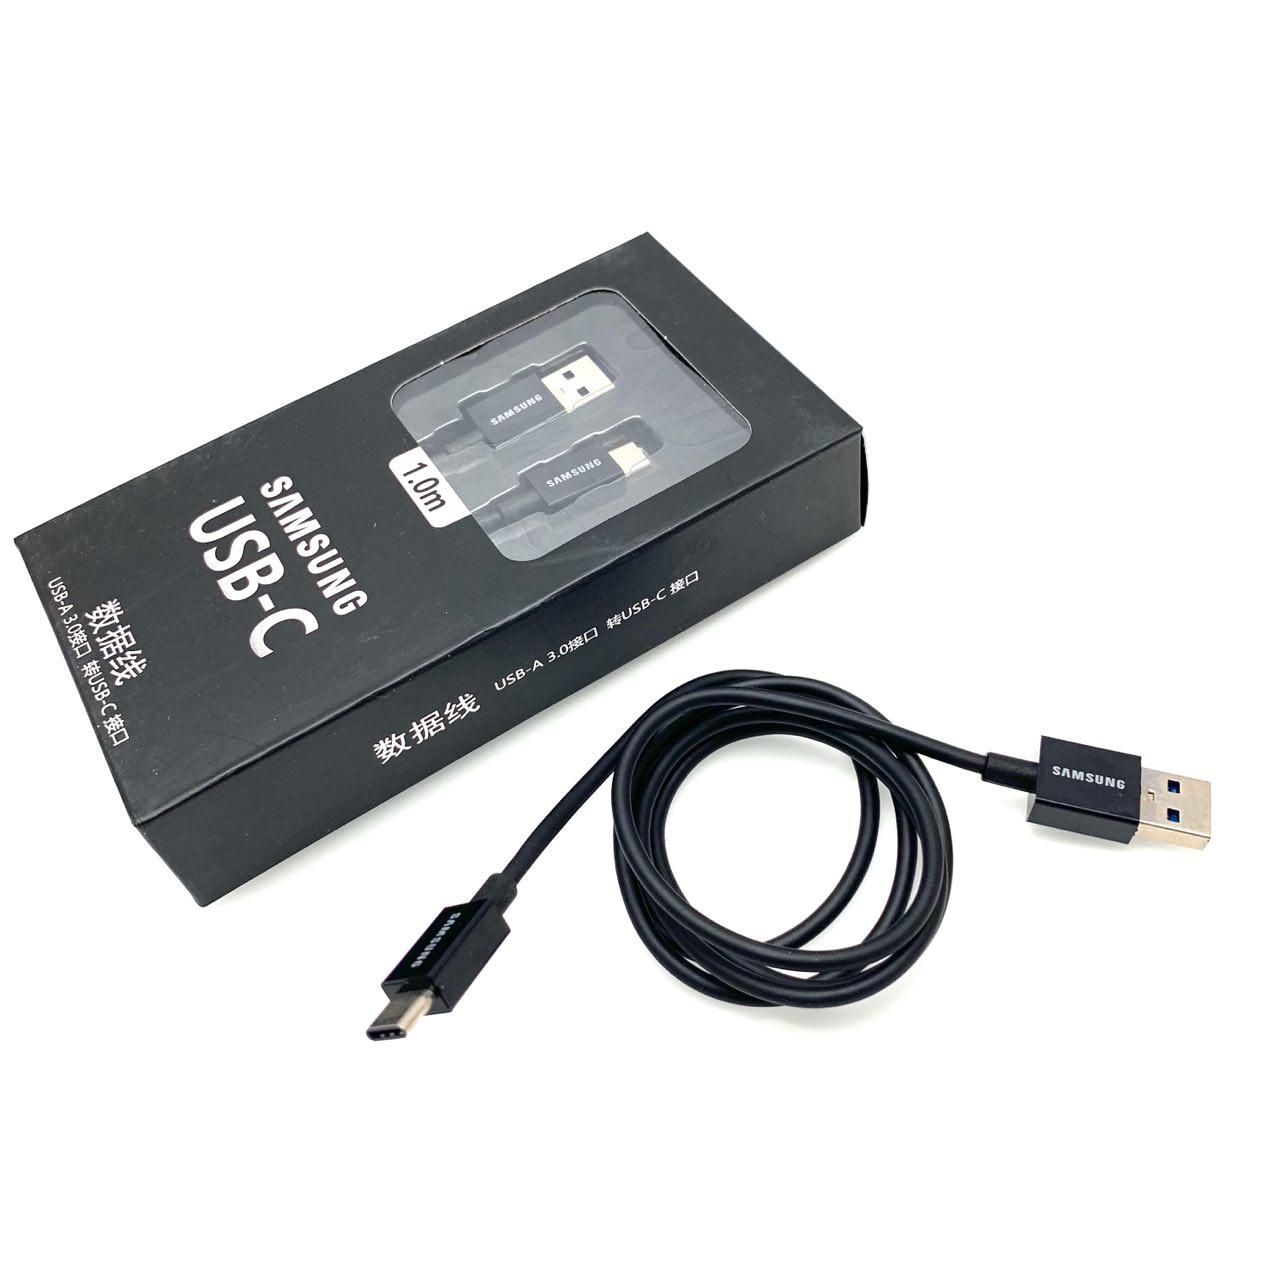 USB Дата-кабель Type-C SAMSUNG SC-UB3105B, длина кабеля 1 метр, цвет чёрный.